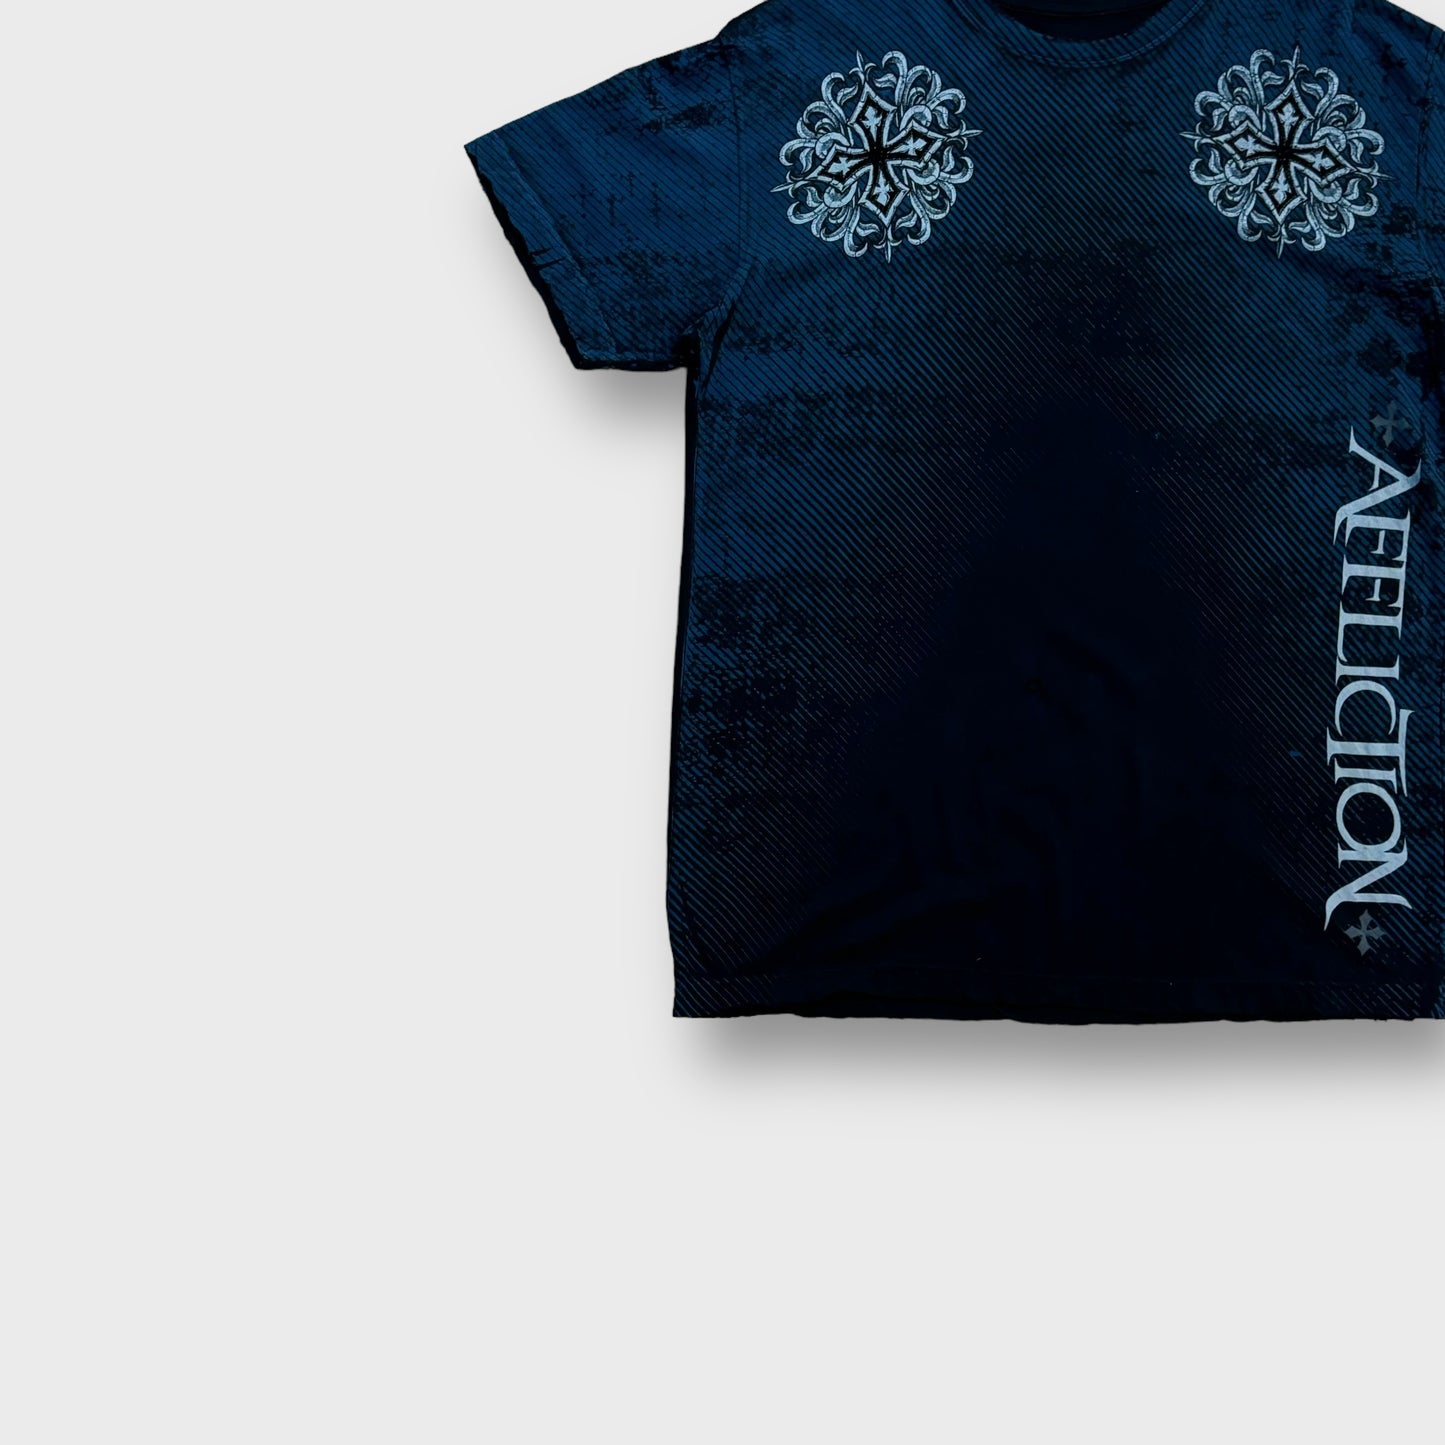 "Affliction" cross design t-shirt